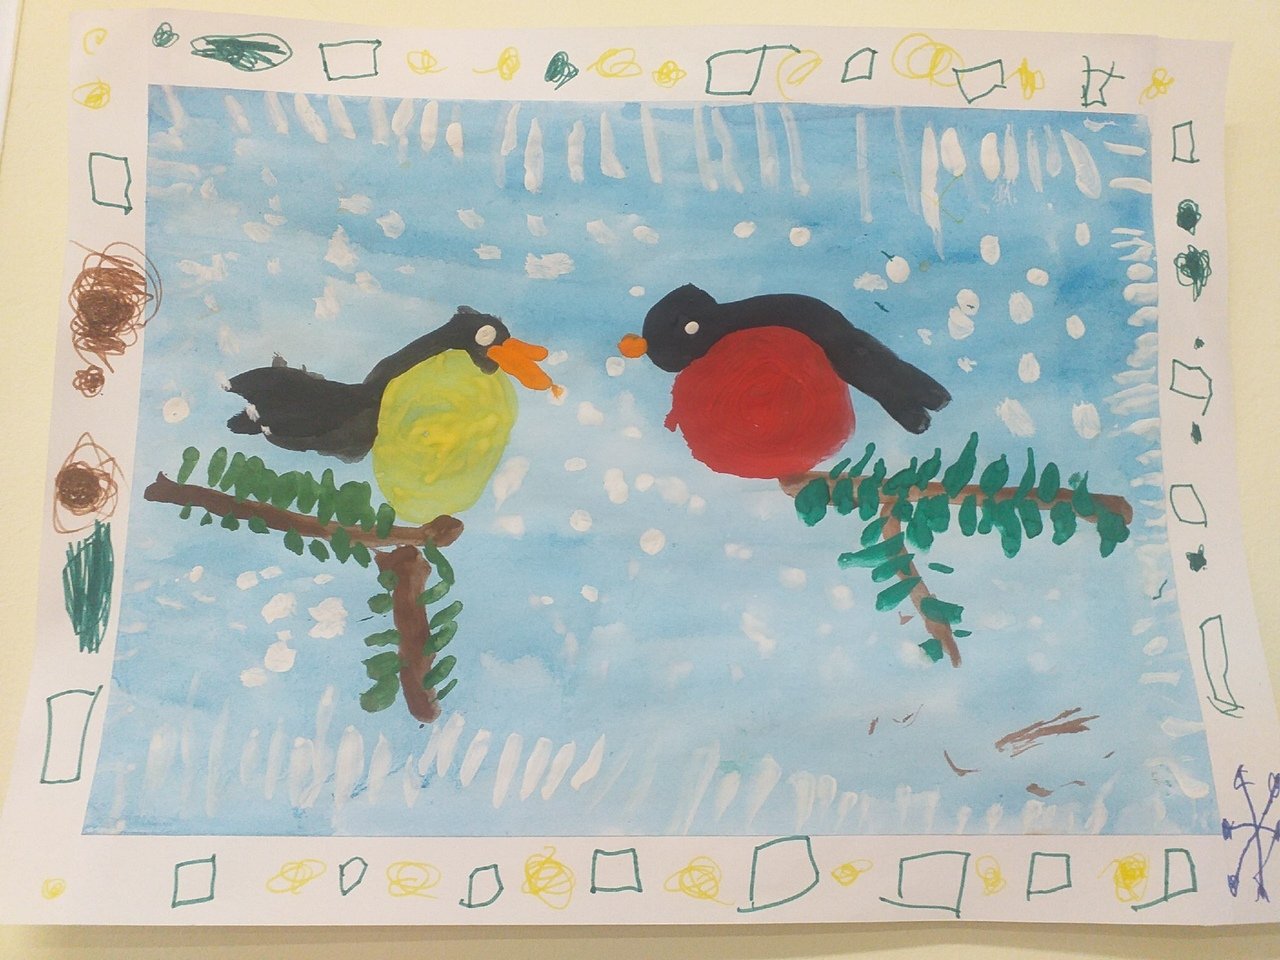 Рисунок на тему Покорми птиц зимой